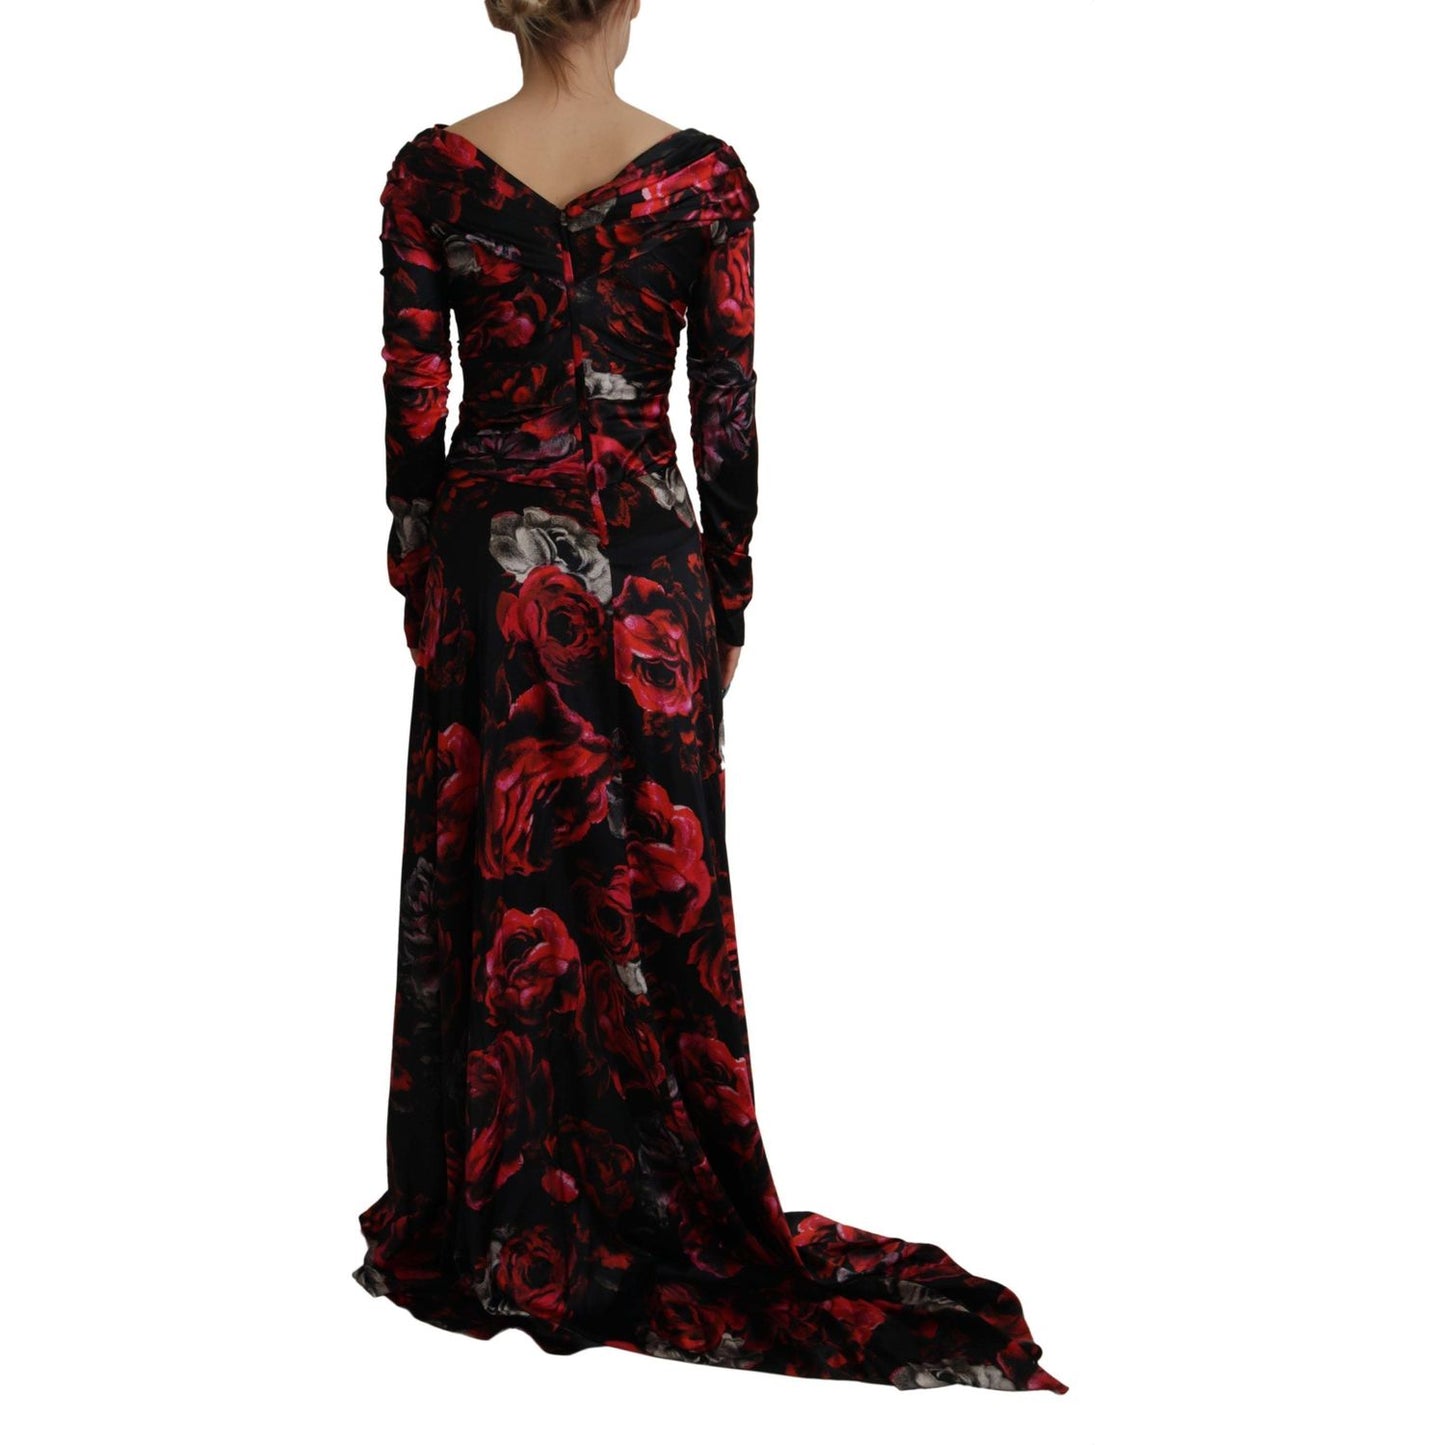 Dolce & GabbanaElegant Floral A-Line Sheath DressMcRichard Designer Brands£2369.00